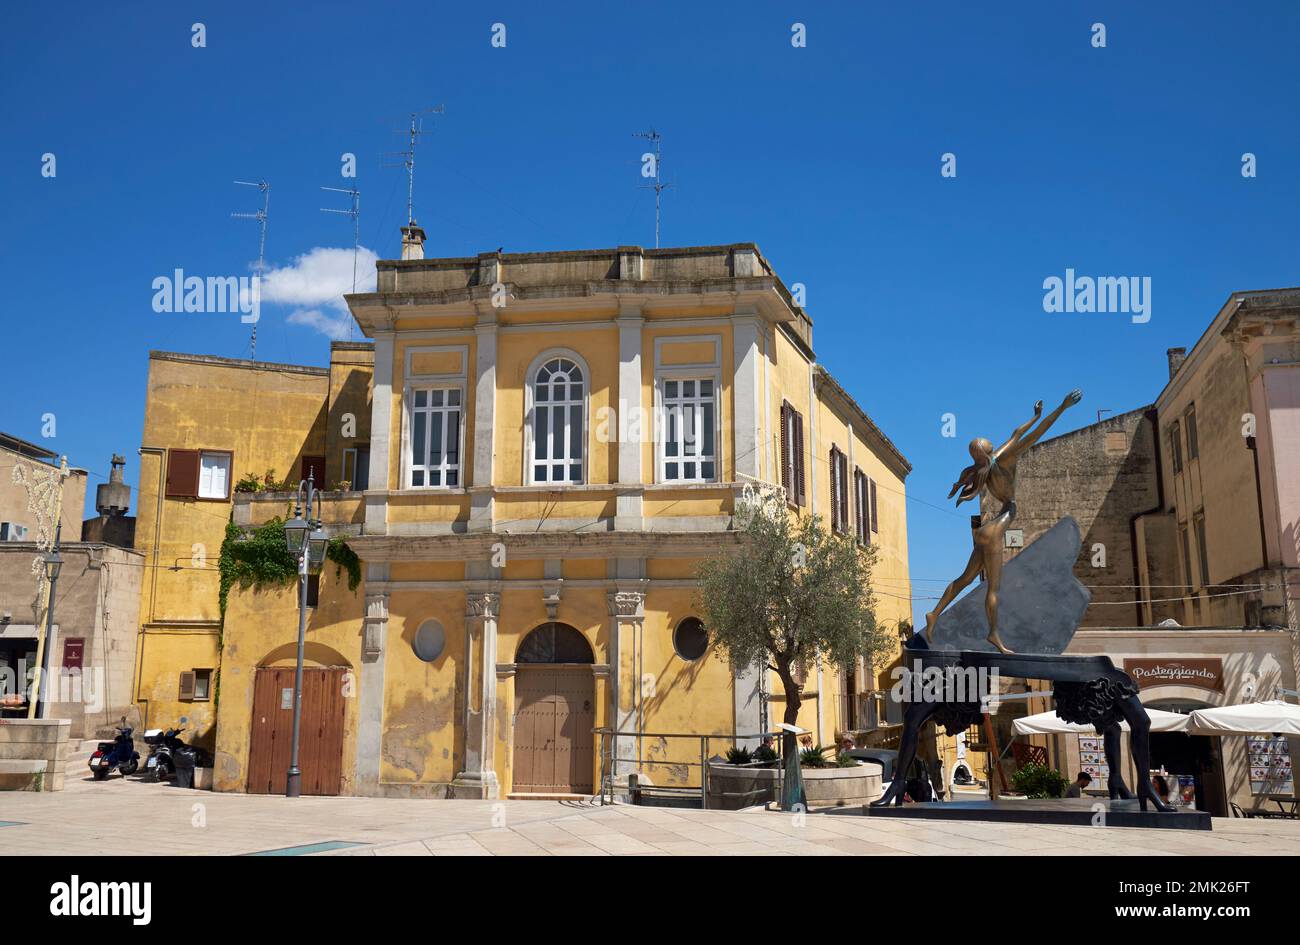 Piazza Francesco d'Assis, Matera, Basilicata, Italia, con a destra una scultura in bronzo del "piano surrealista" di Salvador Dali. Foto Stock